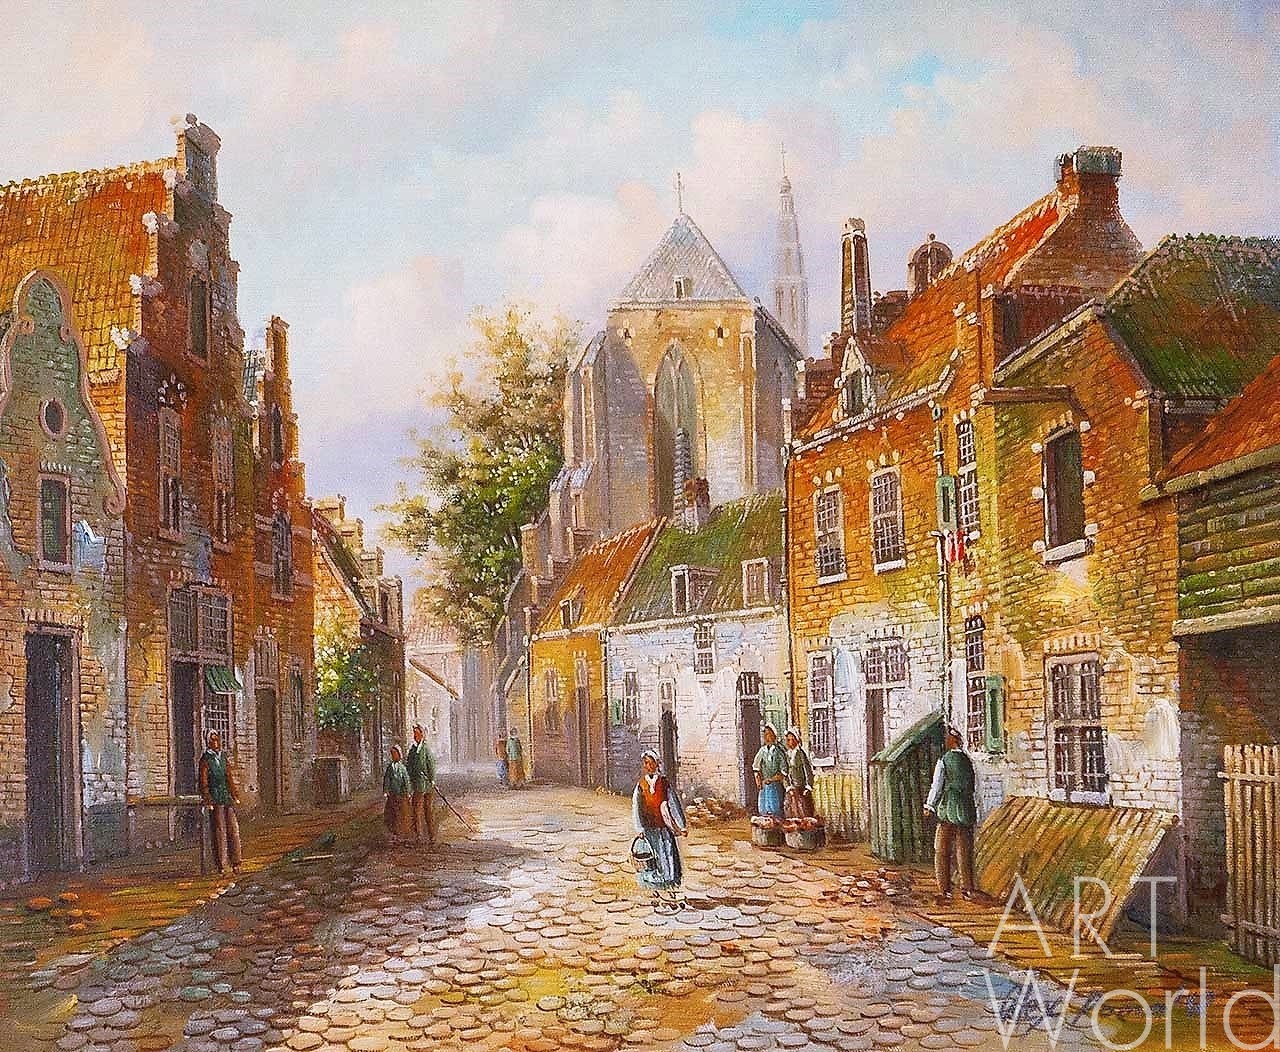 Картина Голландский пейзаж Старая голландская улица. Подражая Виллему  Куккуку. N12 50x60 AR180606 купить в Москве